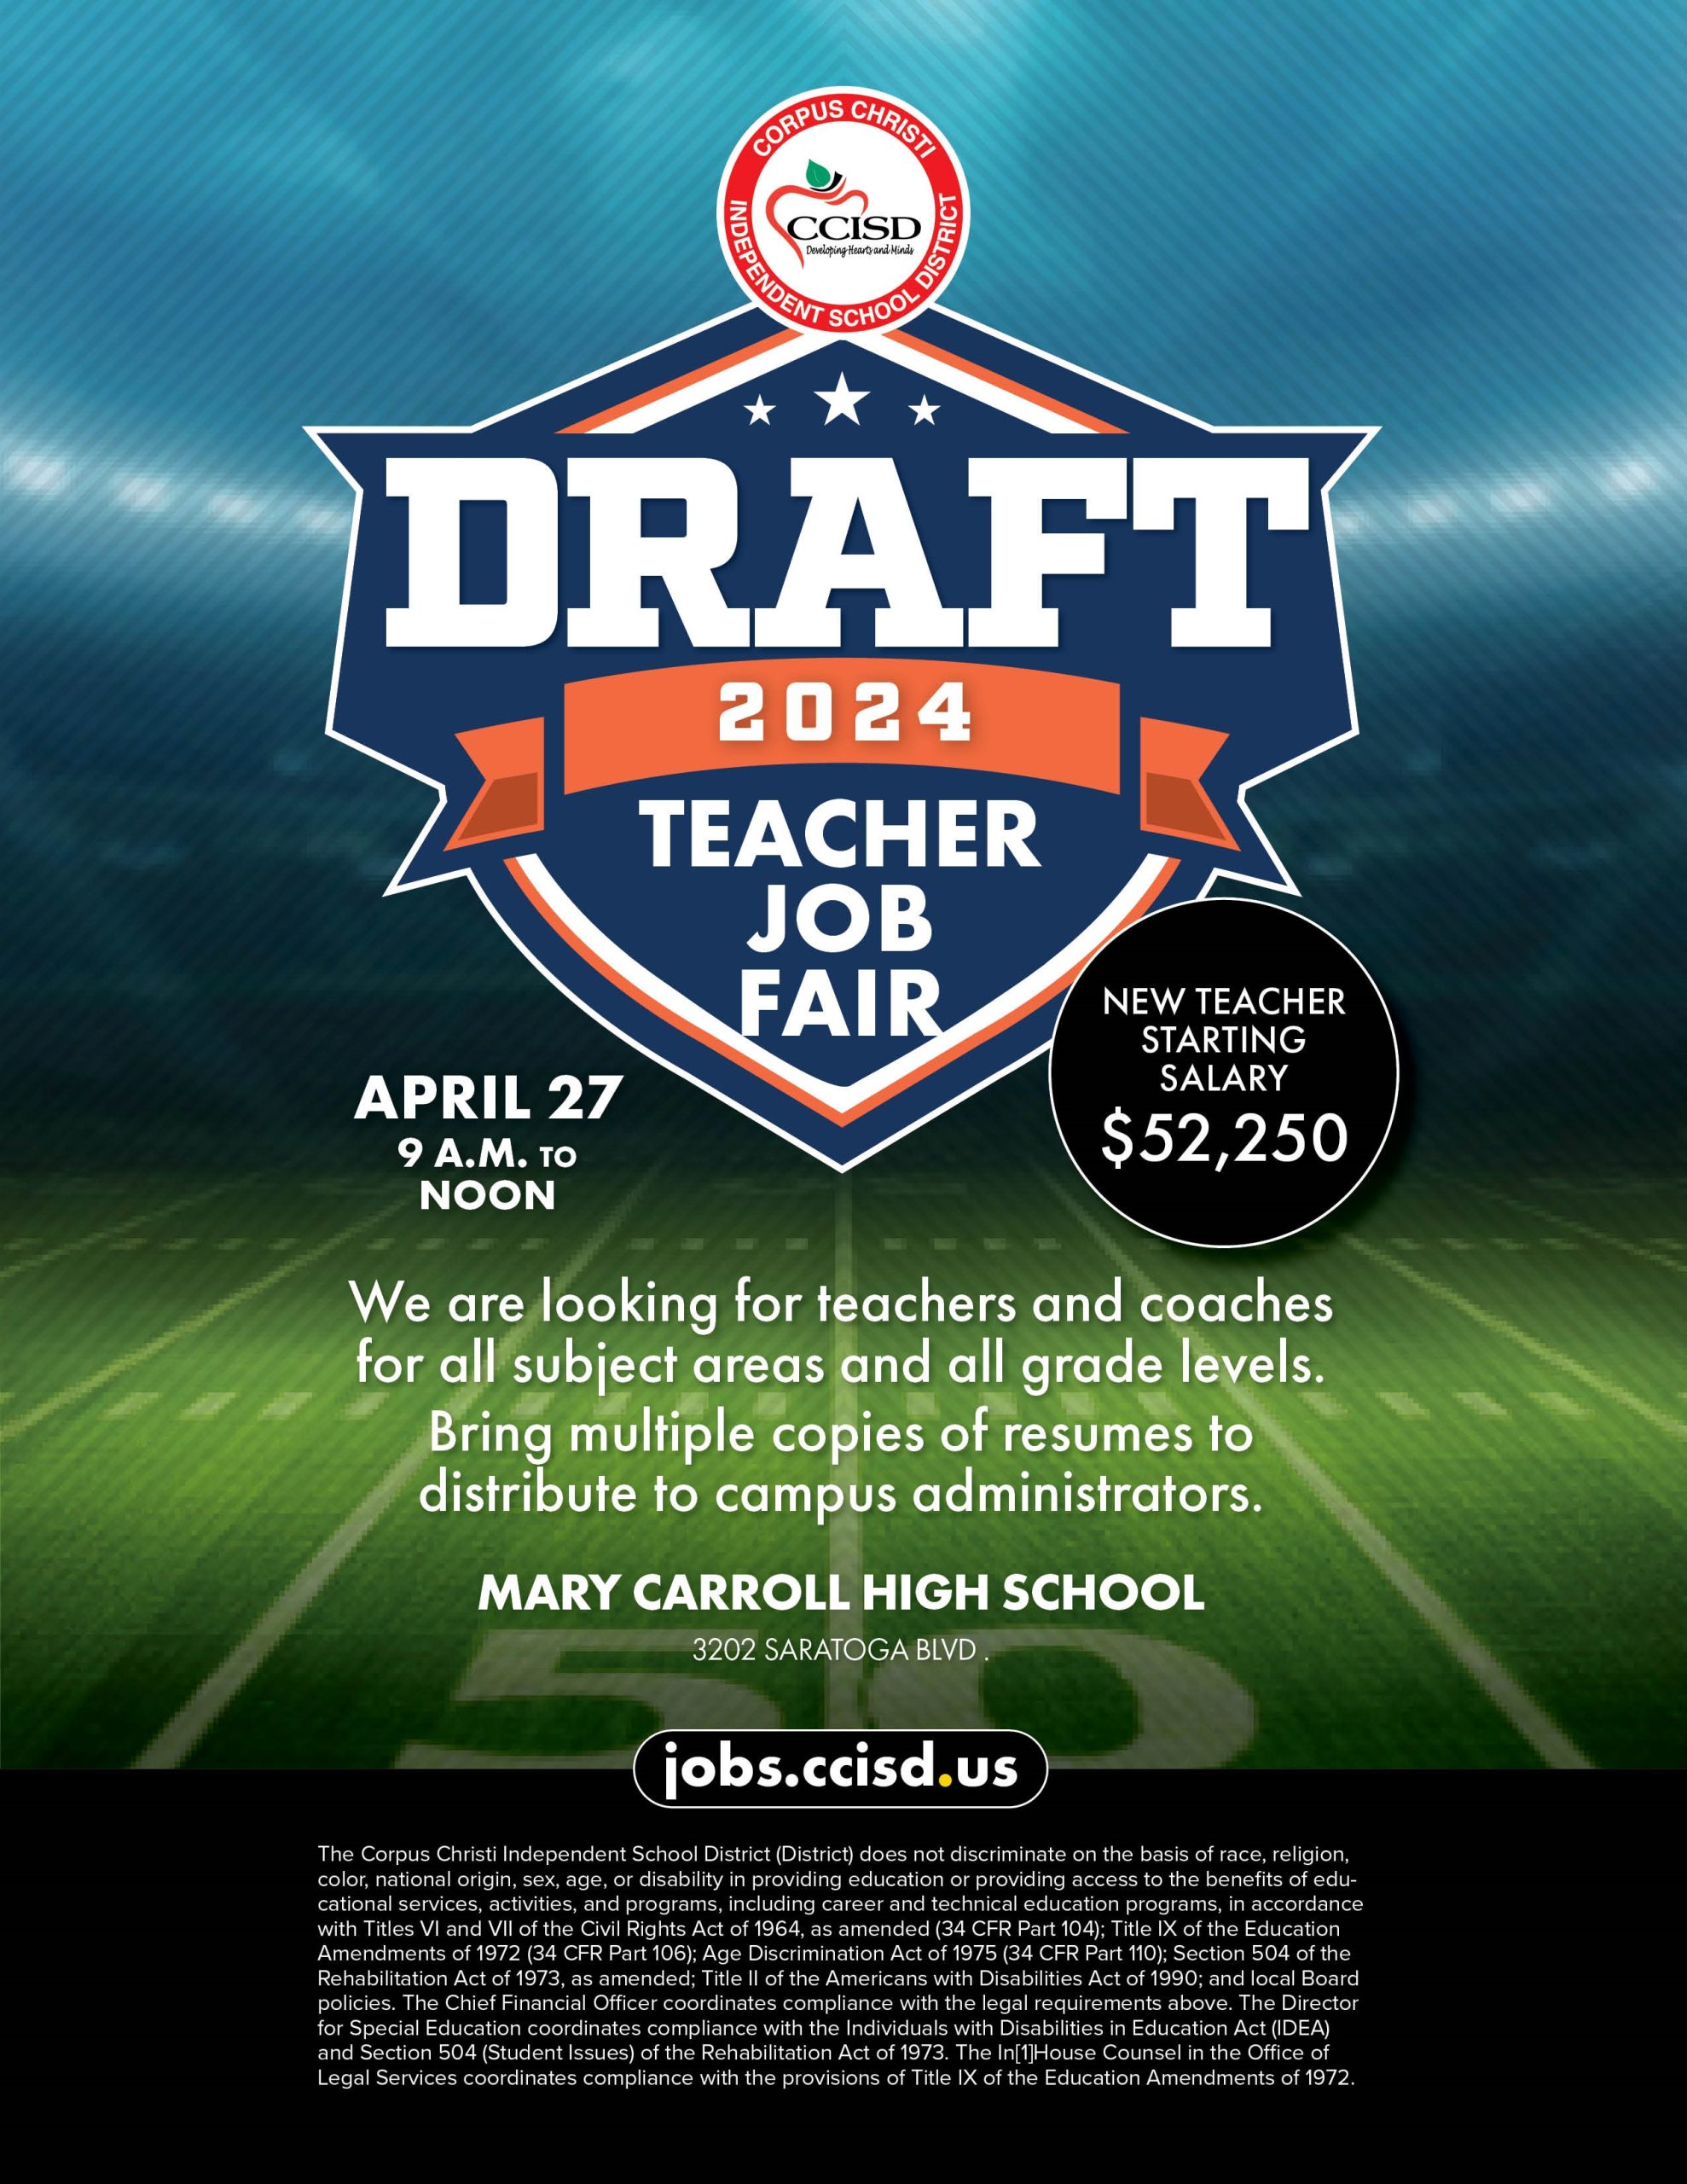 CCISD Draft Day Teacher Job Fair